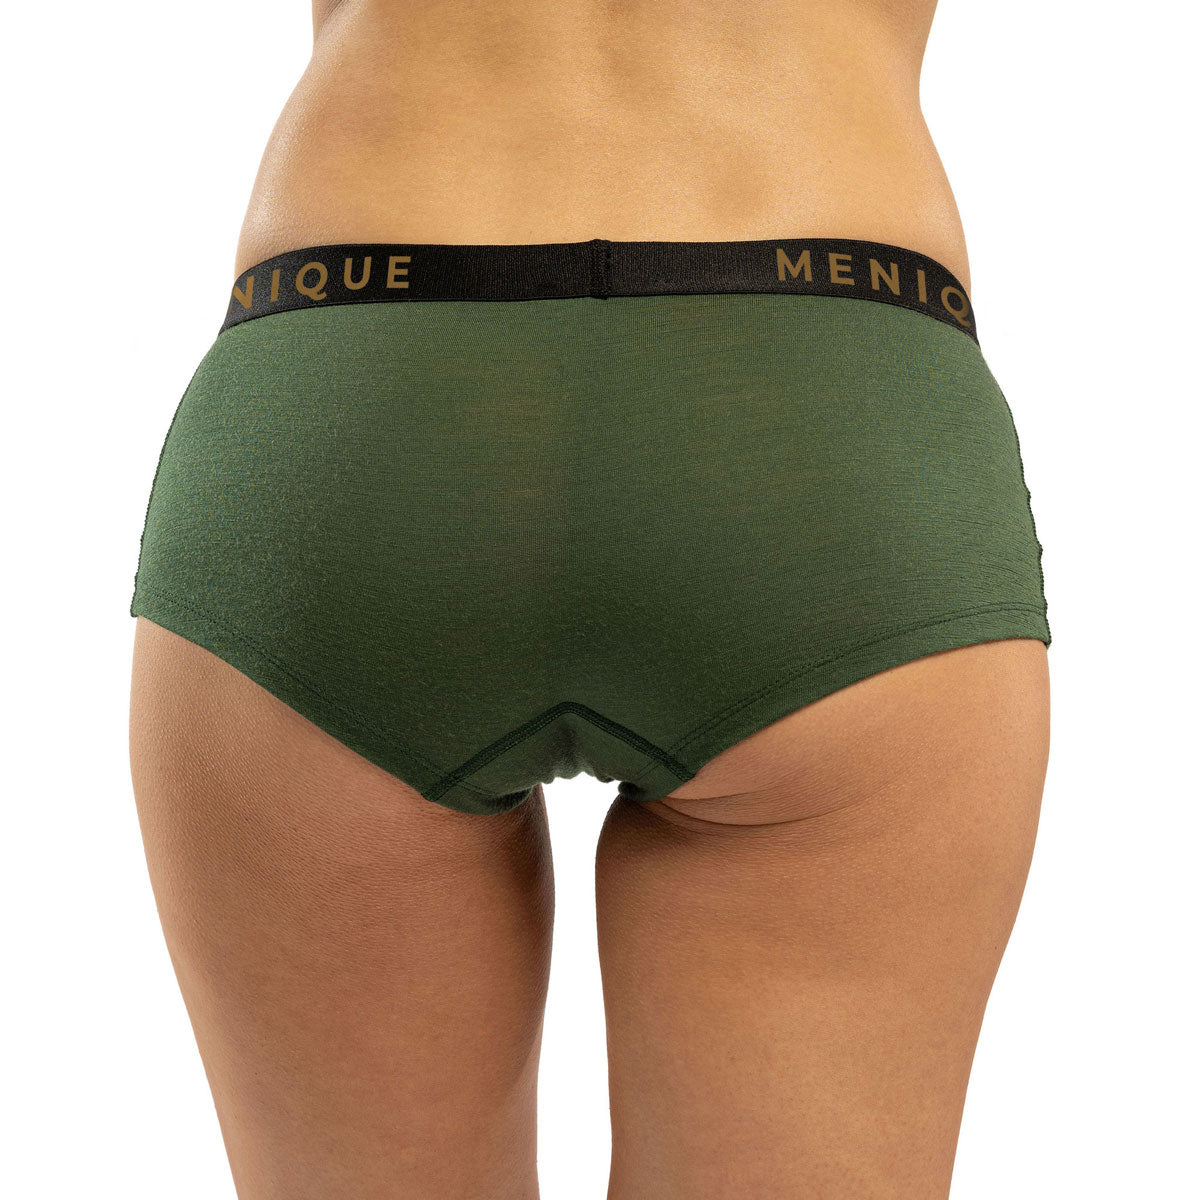 Women's Merino Boxer Shorts Dark Green